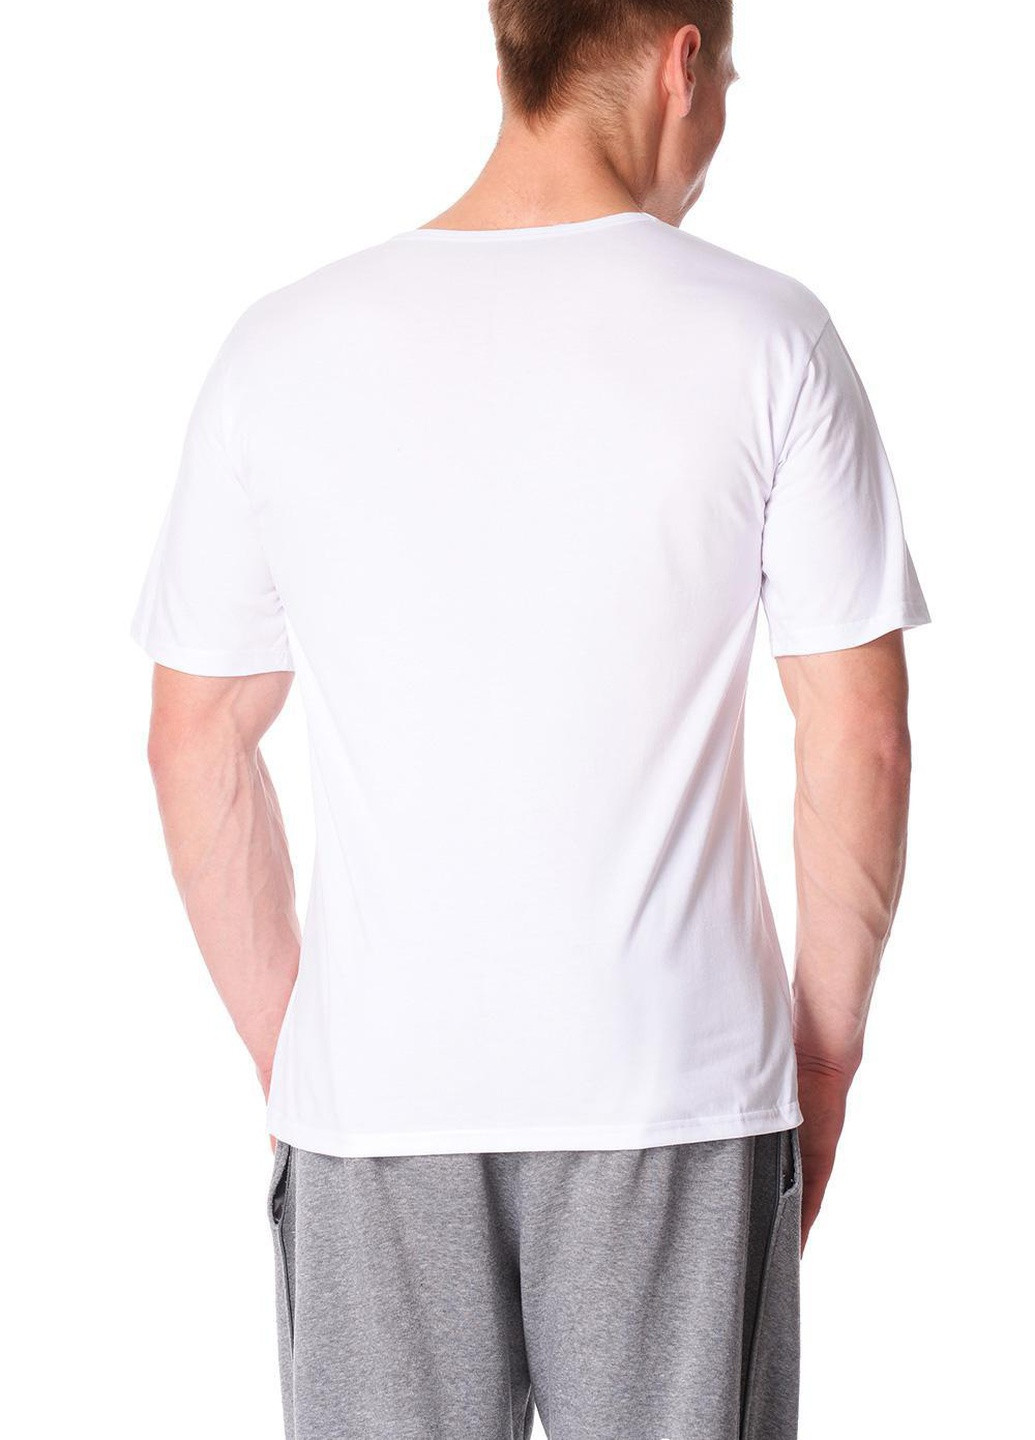 Белая футболка мужская new белый 201ий 201 Cornette